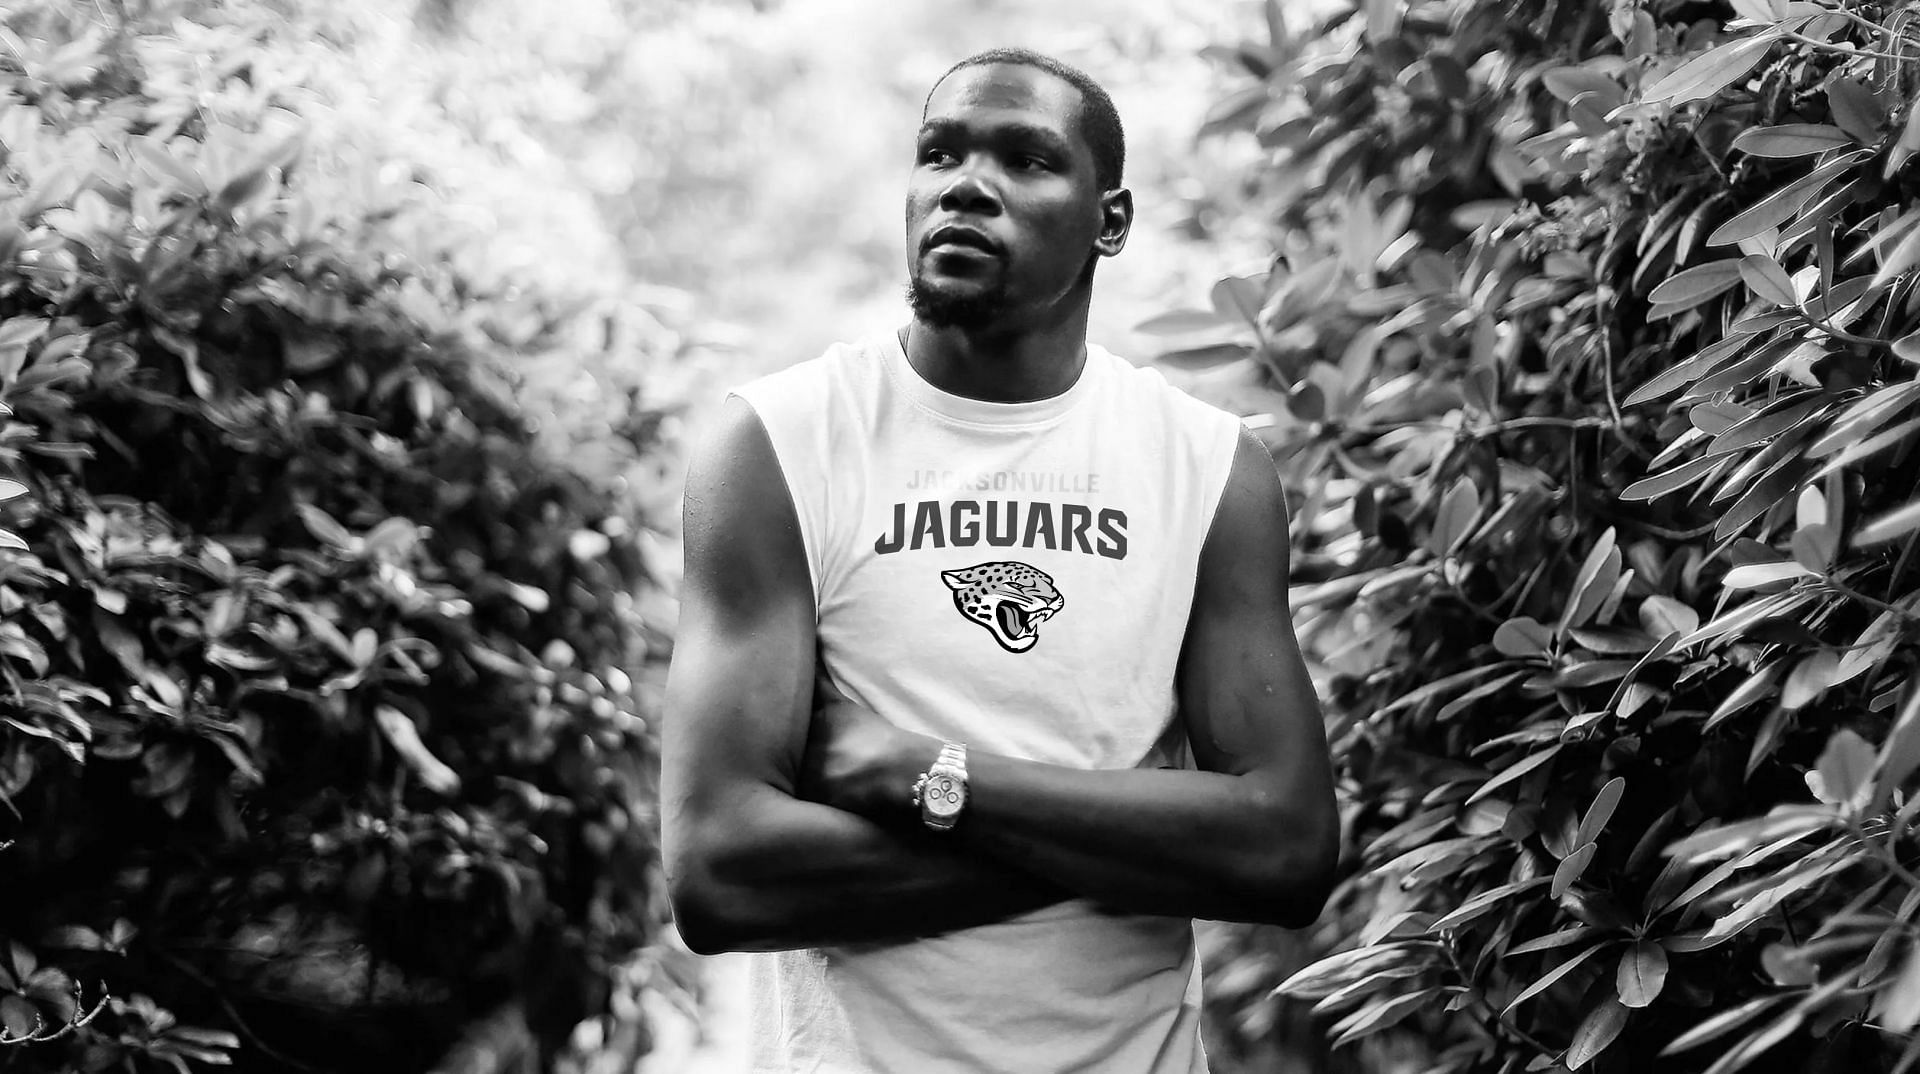 NBA Superstar Kevin Durant donning a Jaguars shirt. Source: Jacksonville Jaguars